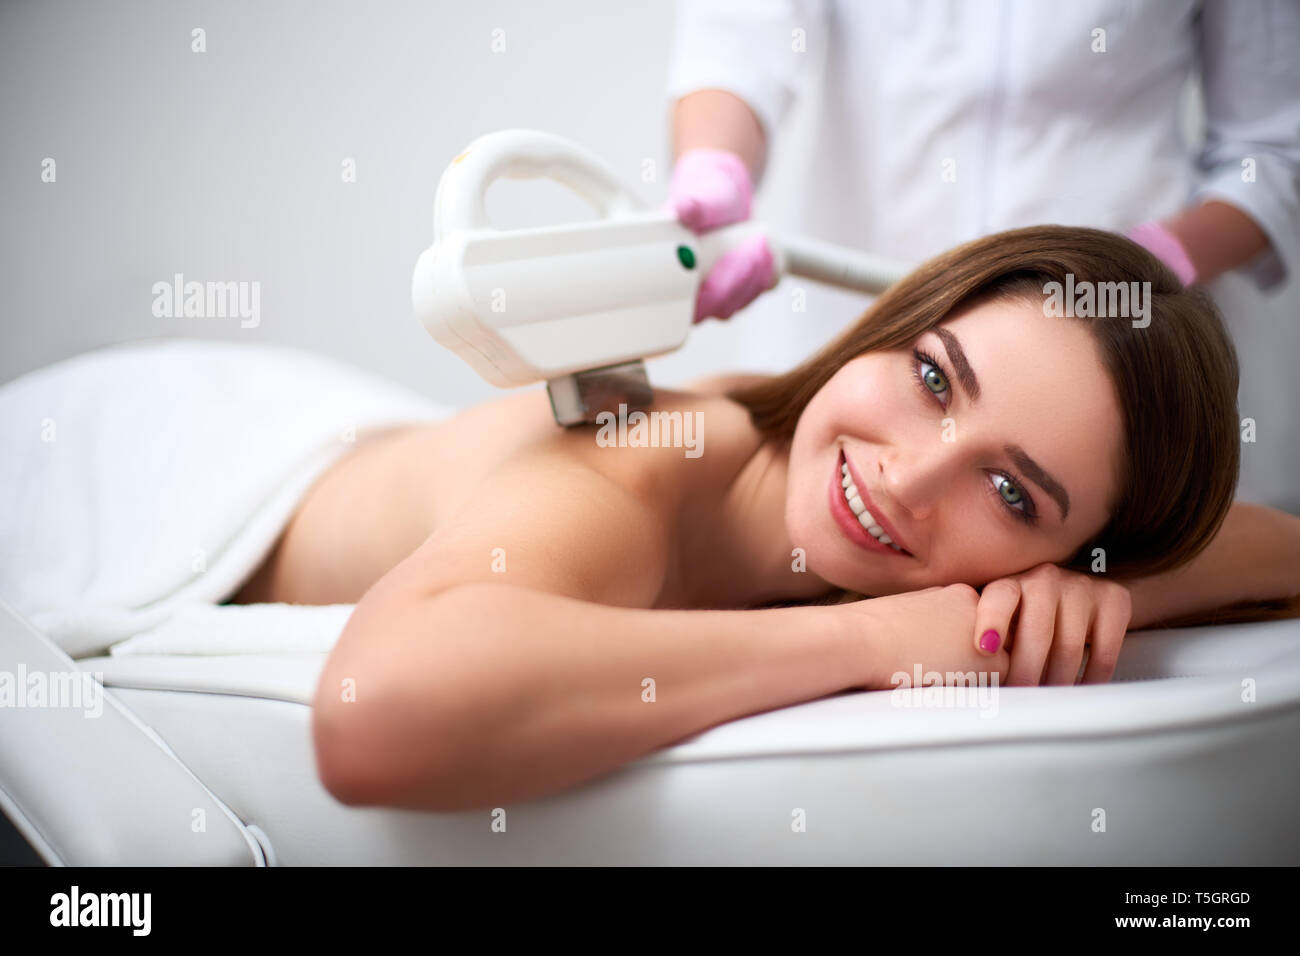 Jolie jeune femme souriante retour épilation au laser en instituts de beauté. Cosmetologist faire l'épilation traitement avec elos périphérique. Les mains dans les gants coiffeur Banque D'Images